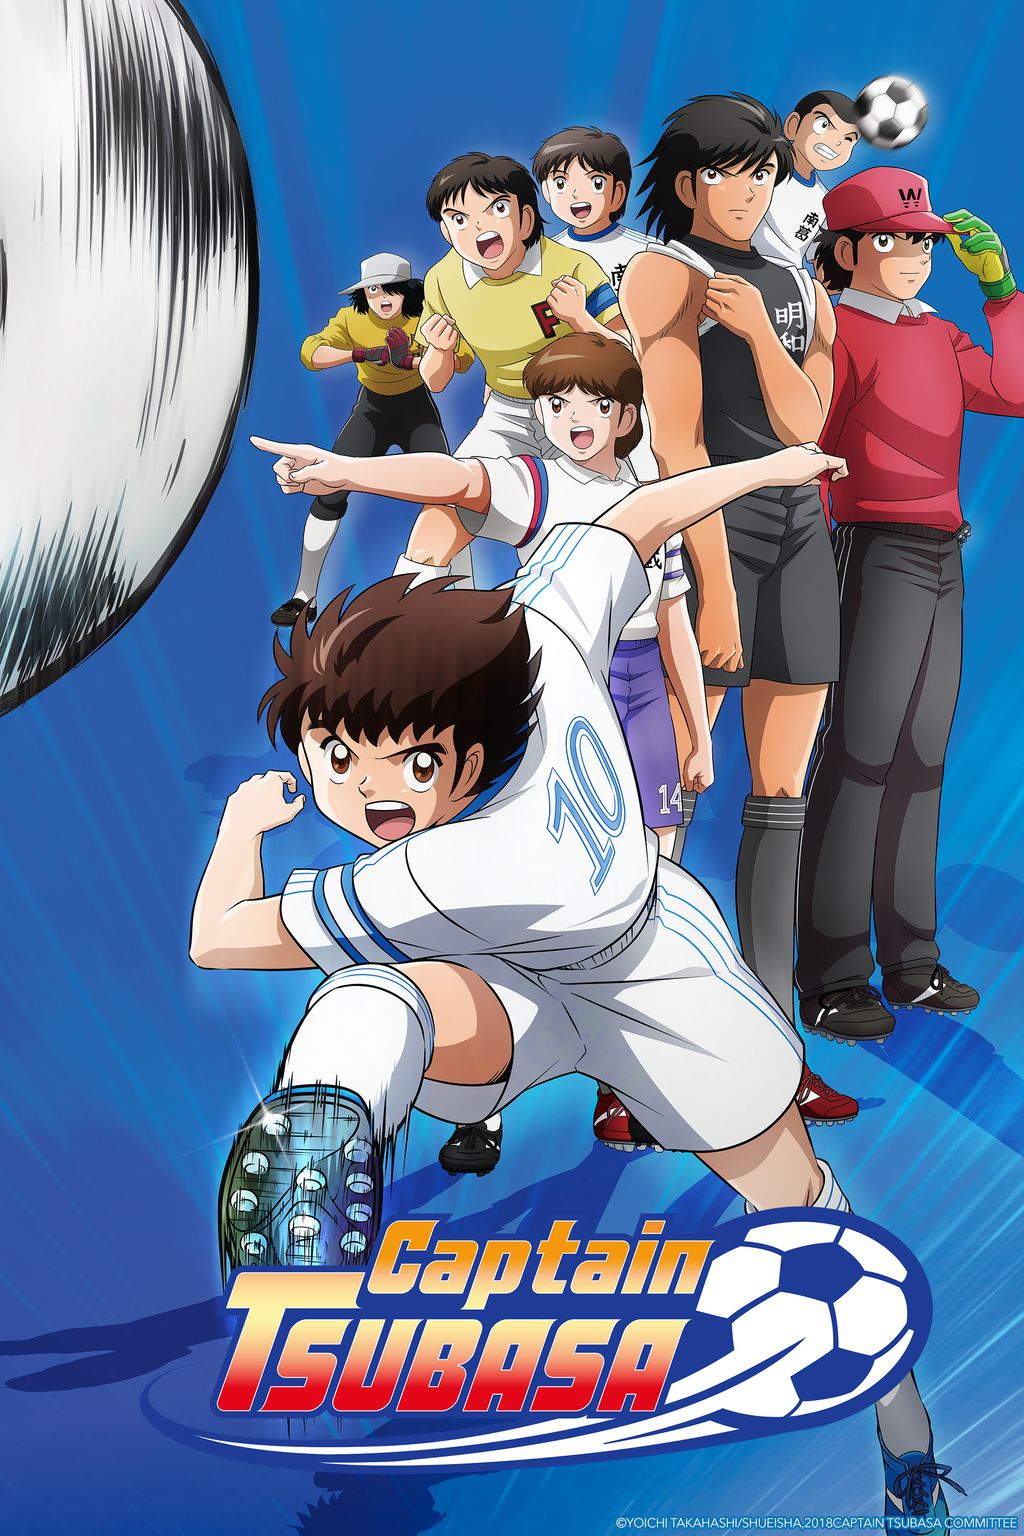 Versão mais recente do clássico anime de futebol chega nesta sexta-feira (Imagem: Divulgação/Crunchyroll)